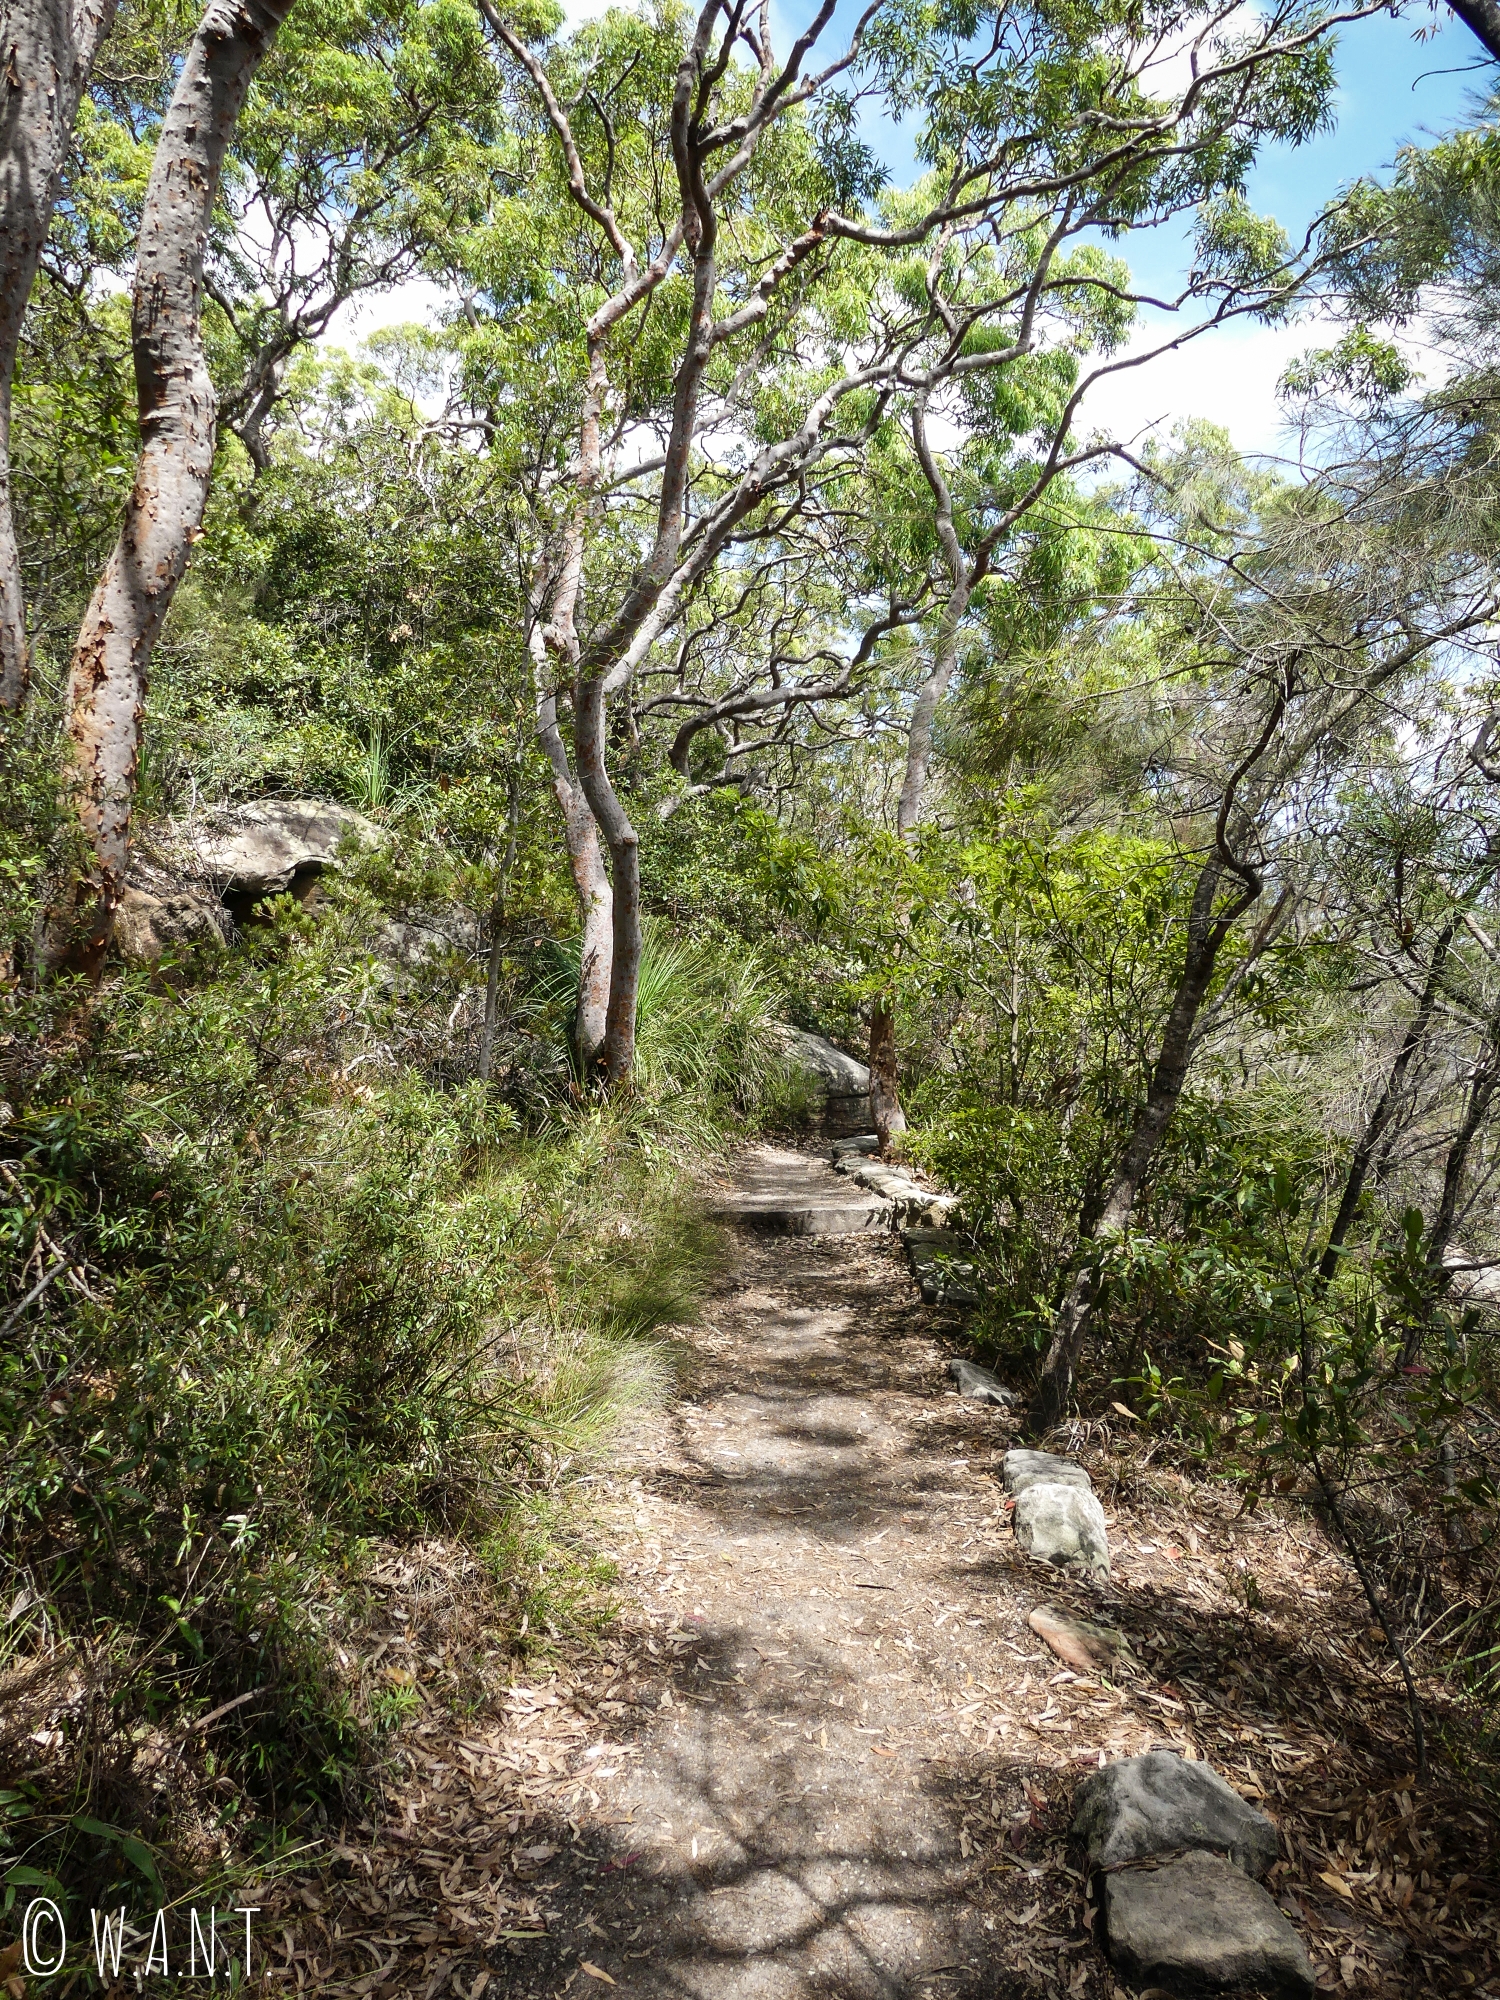 Une partie de la randonnée Manly Scenic Walkway nous fait passer à travers la végétation